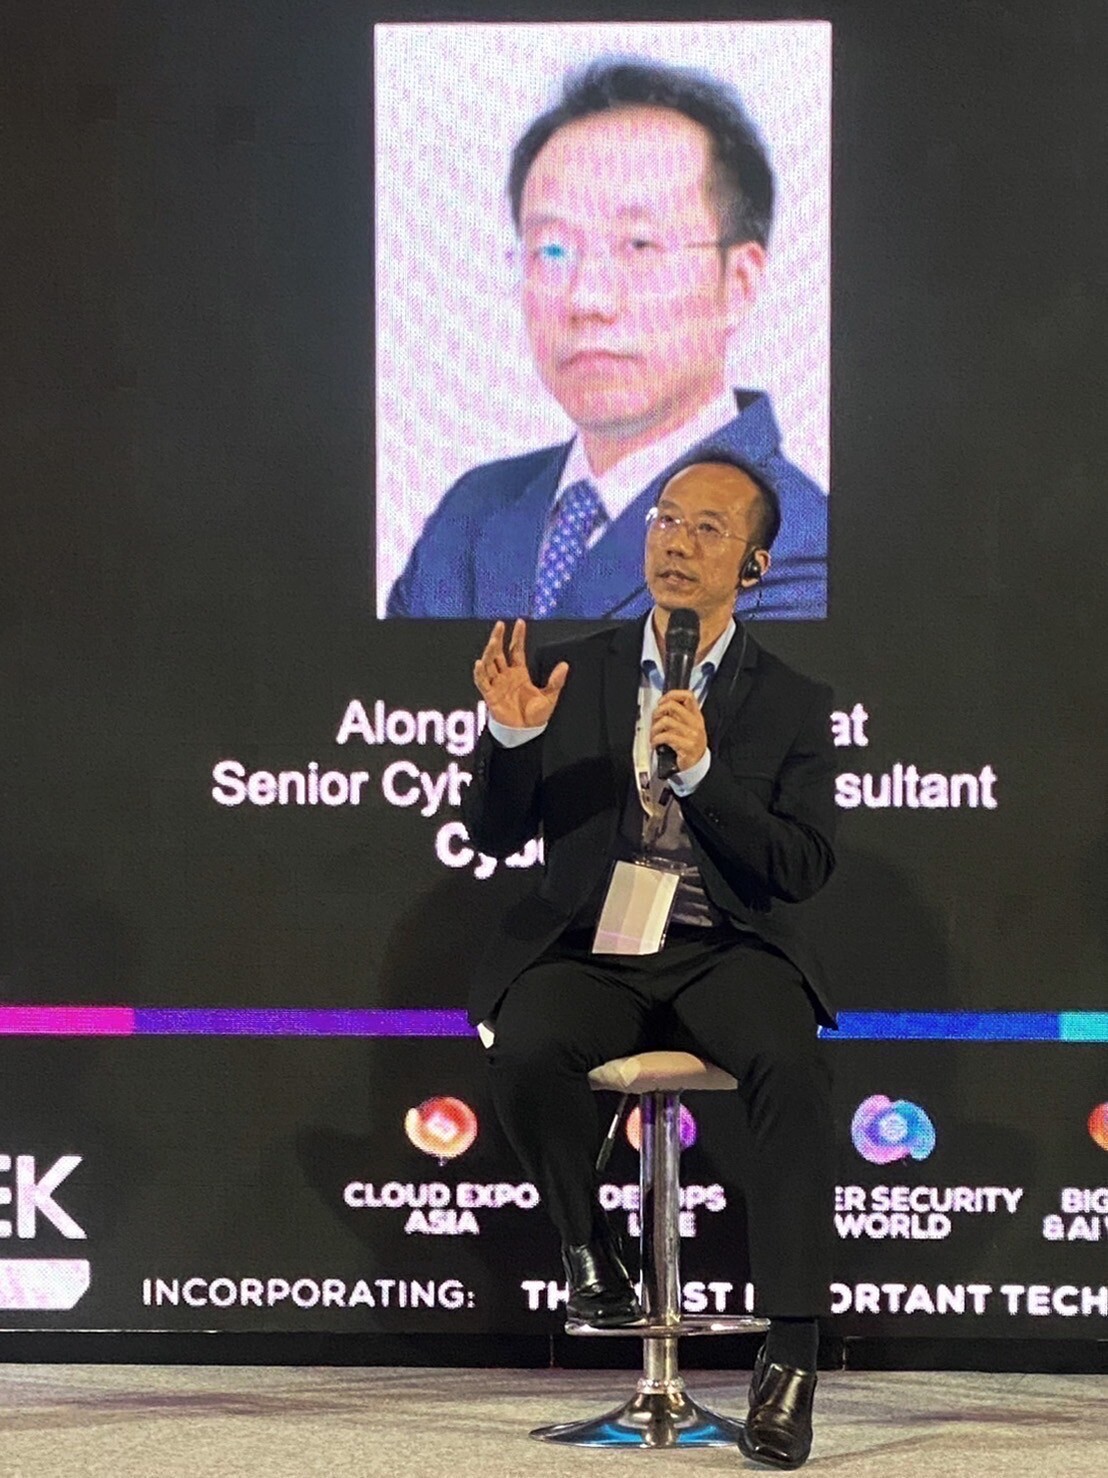 ไซเบอร์จีนิคส์ ชูแนวคิด ความปลอดภัยทางไซเบอร์ เพื่อ Business &amp; Cyber Resilience ที่มีส่วนร่วมทั้งองค์กร ในงาน Smart Cybersecurity Summit Thailand 2023